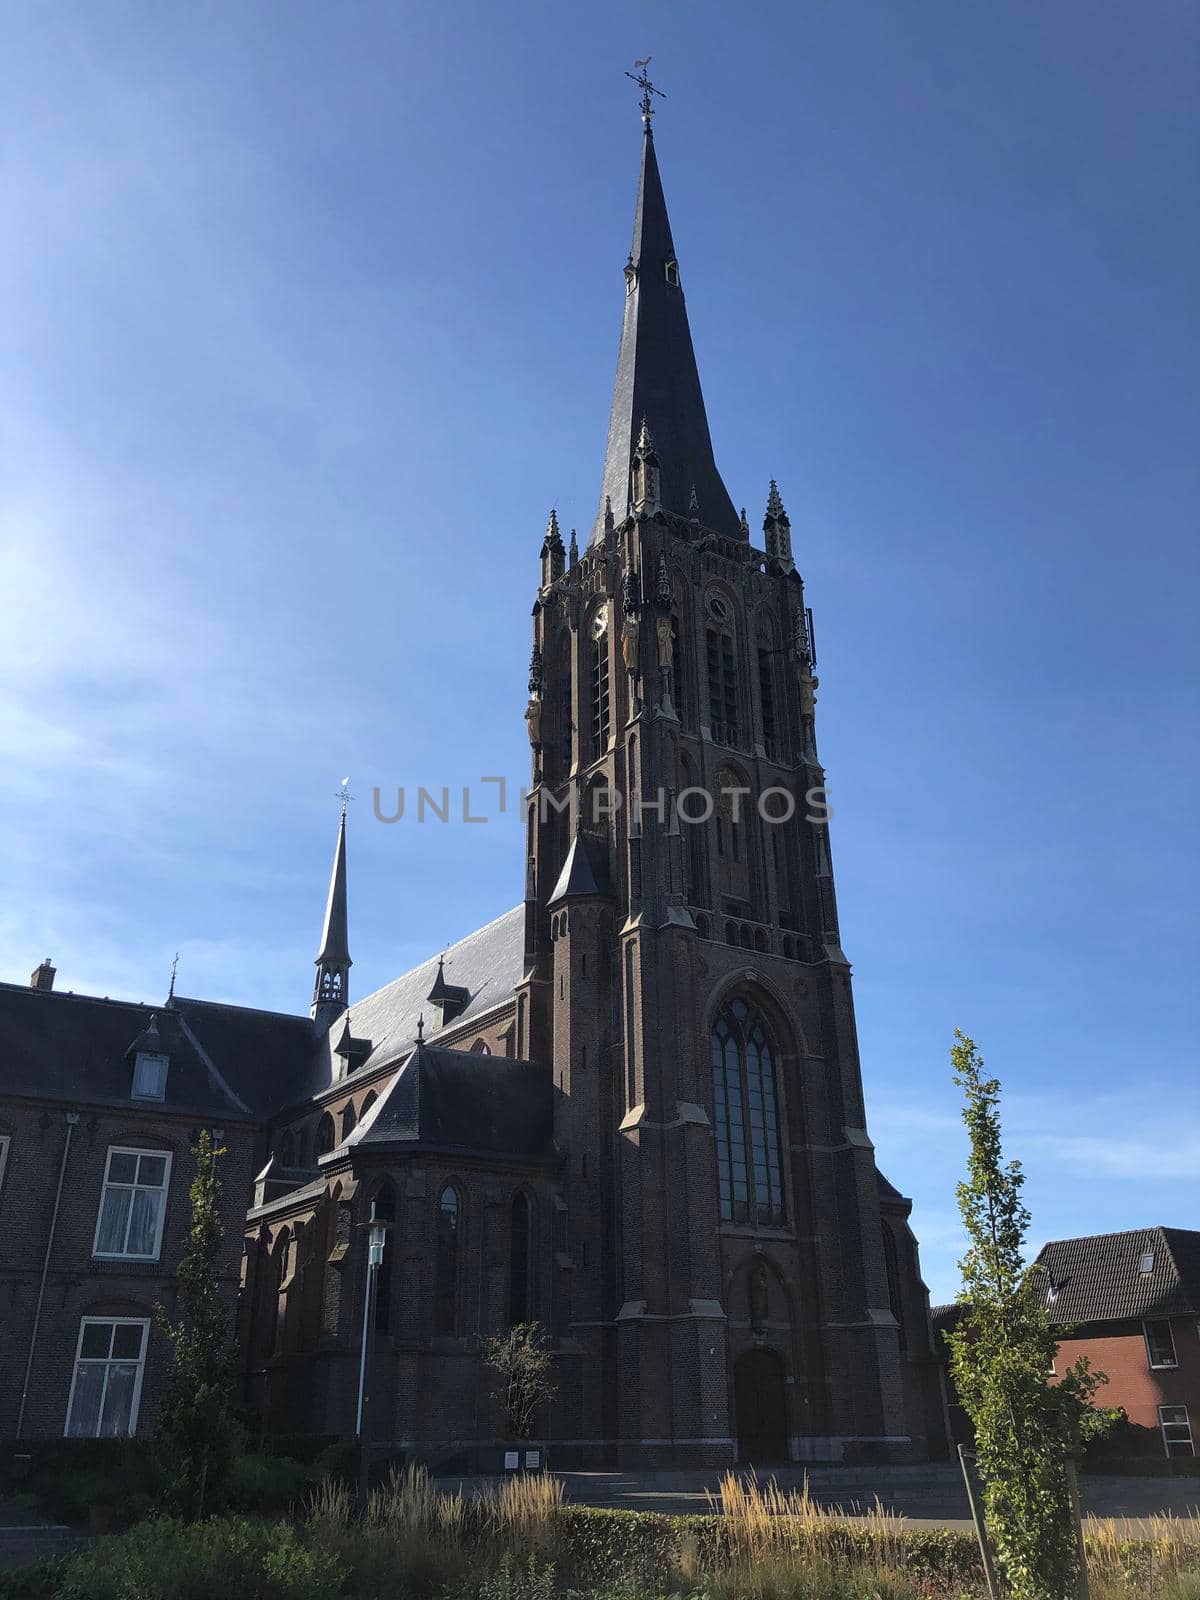 St. Werenfridus church in Zieuwent, The Netherlands